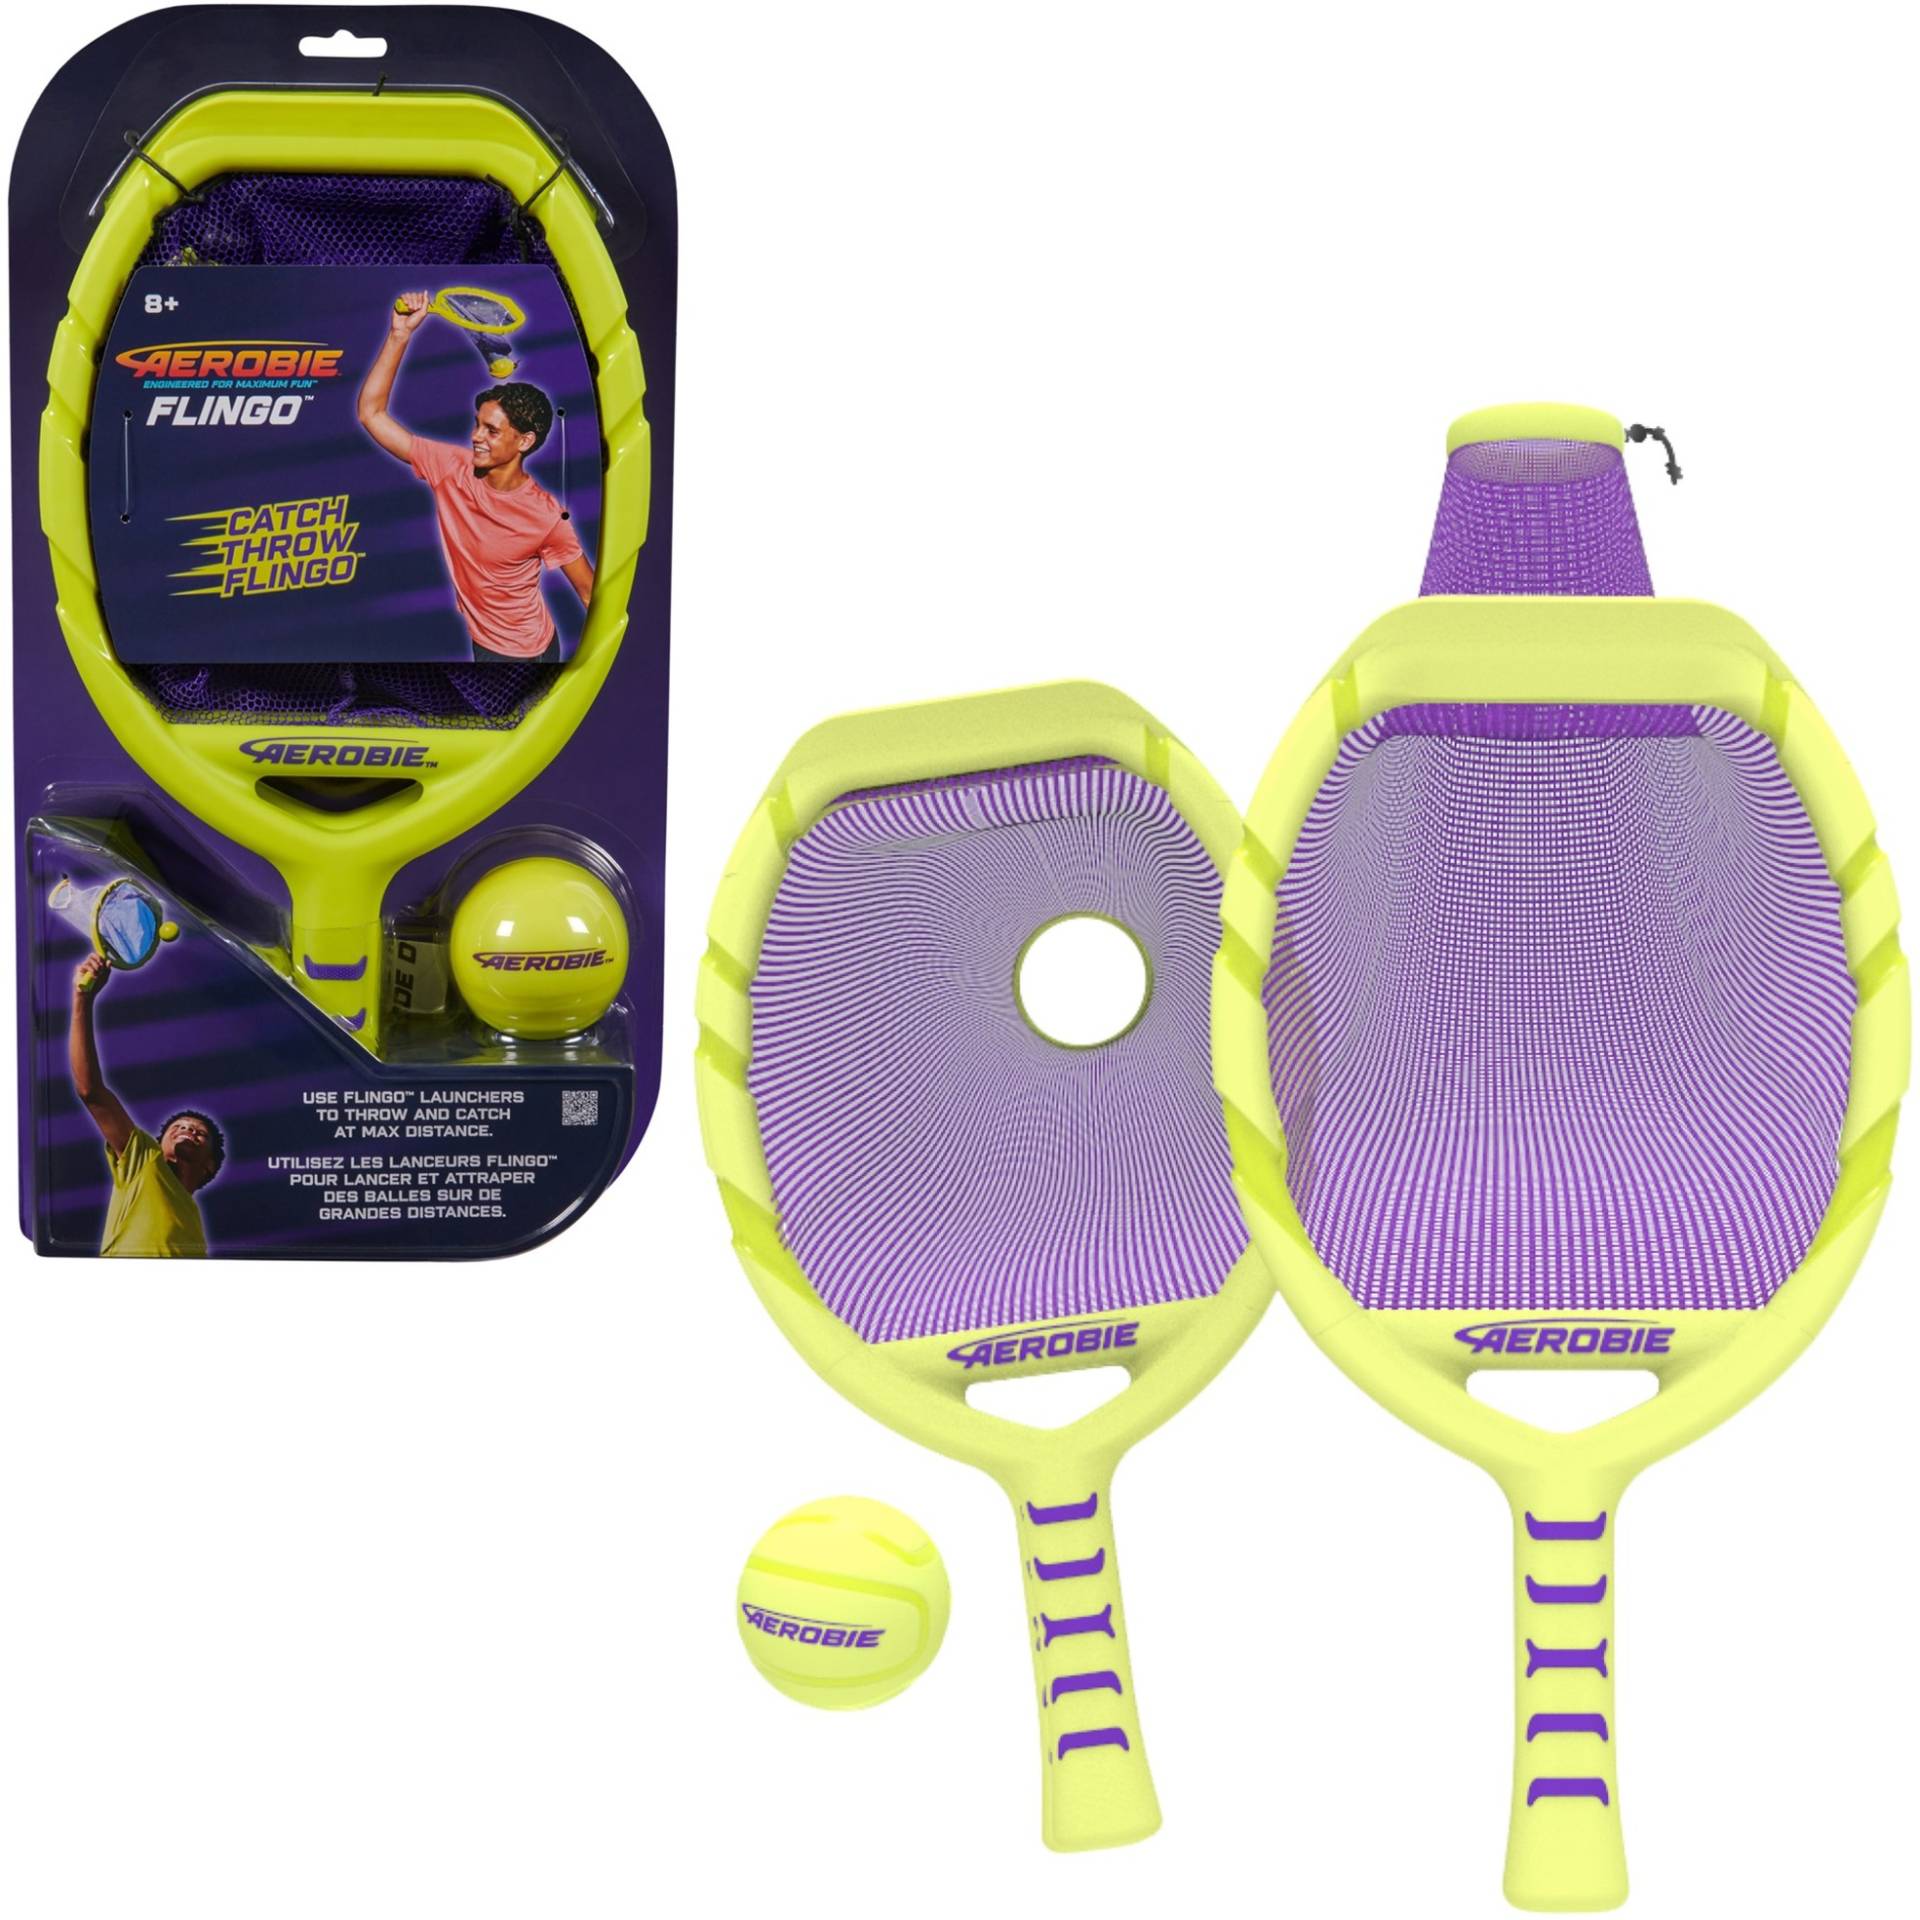 Aerobie - Flingo Tennis-Set, Fitnessgerät von Spin Master